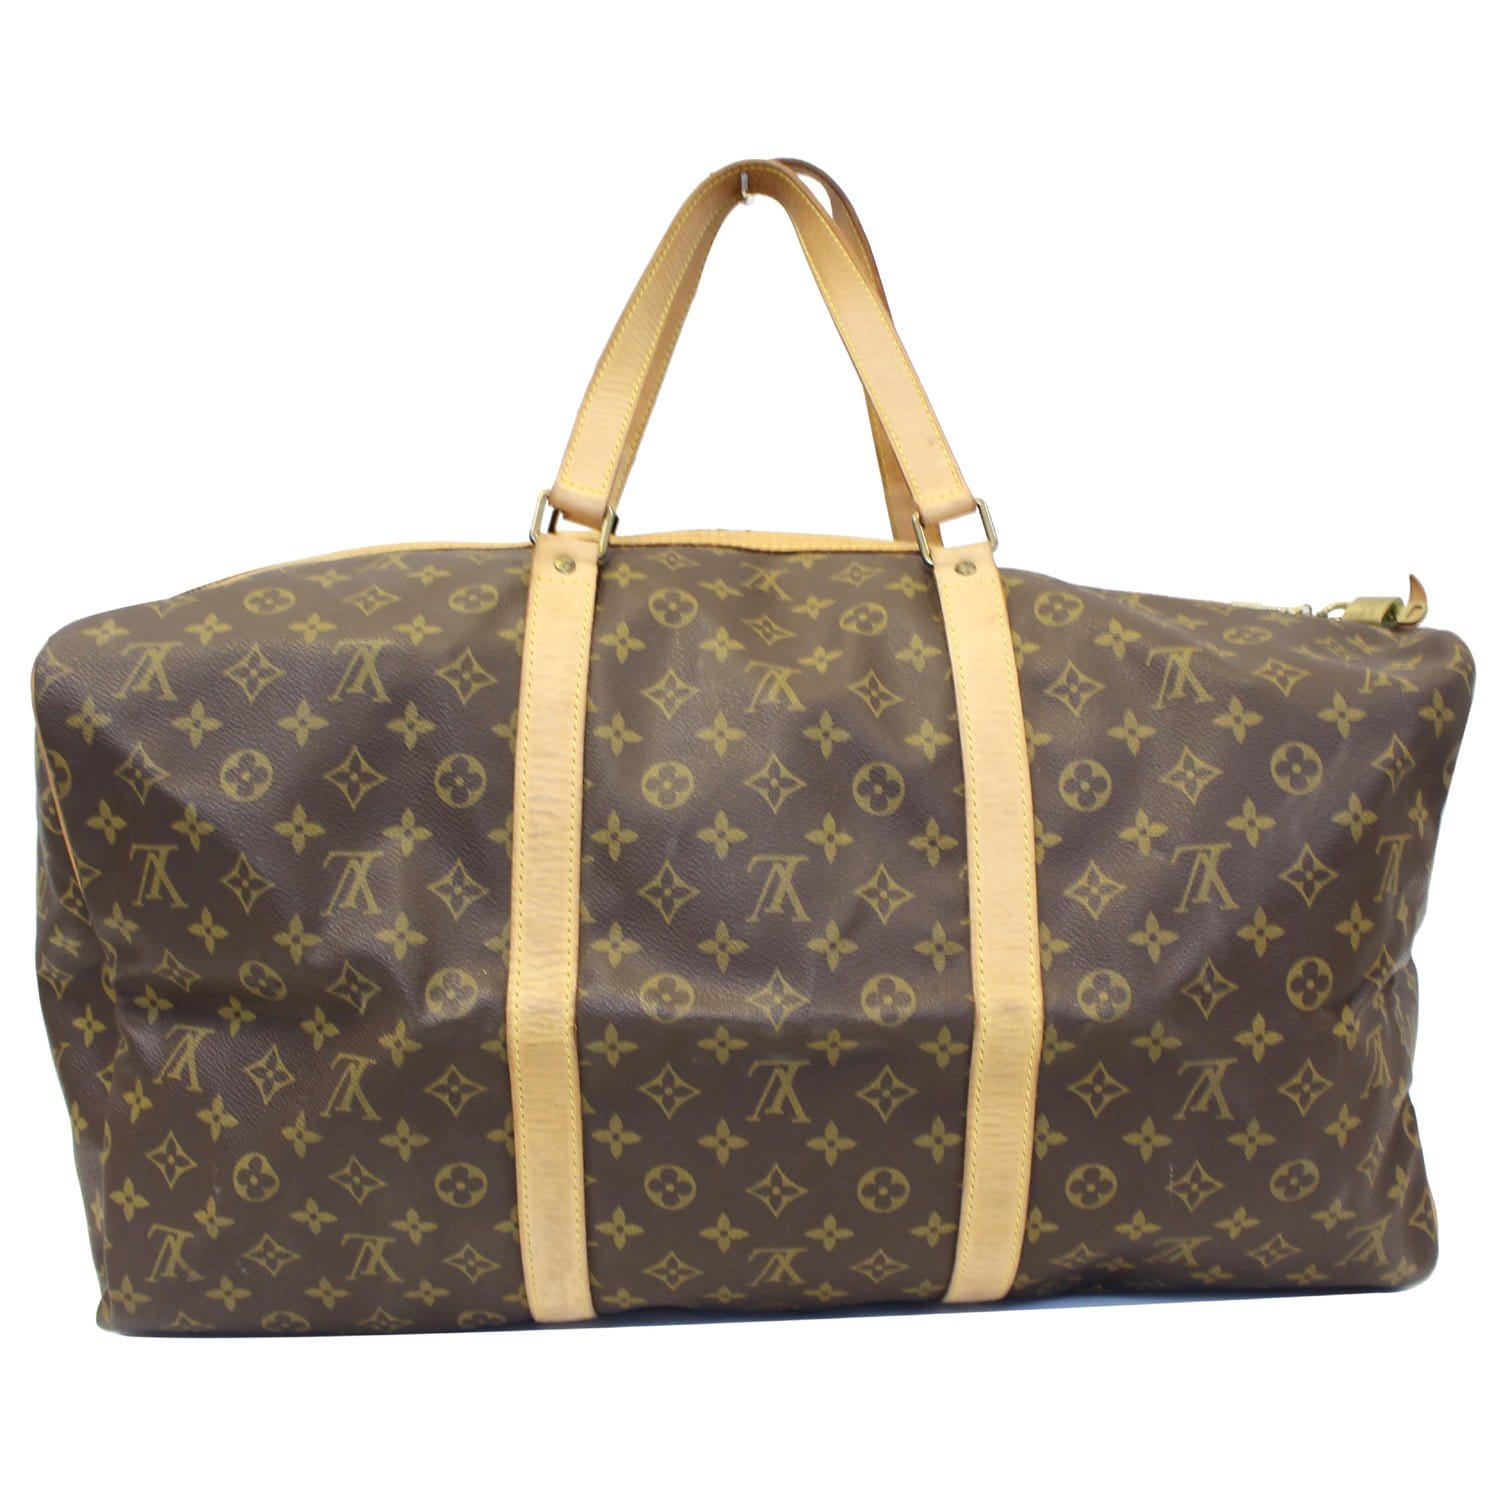 Louis Vuitton Sac Souple 50 Duffle Bag